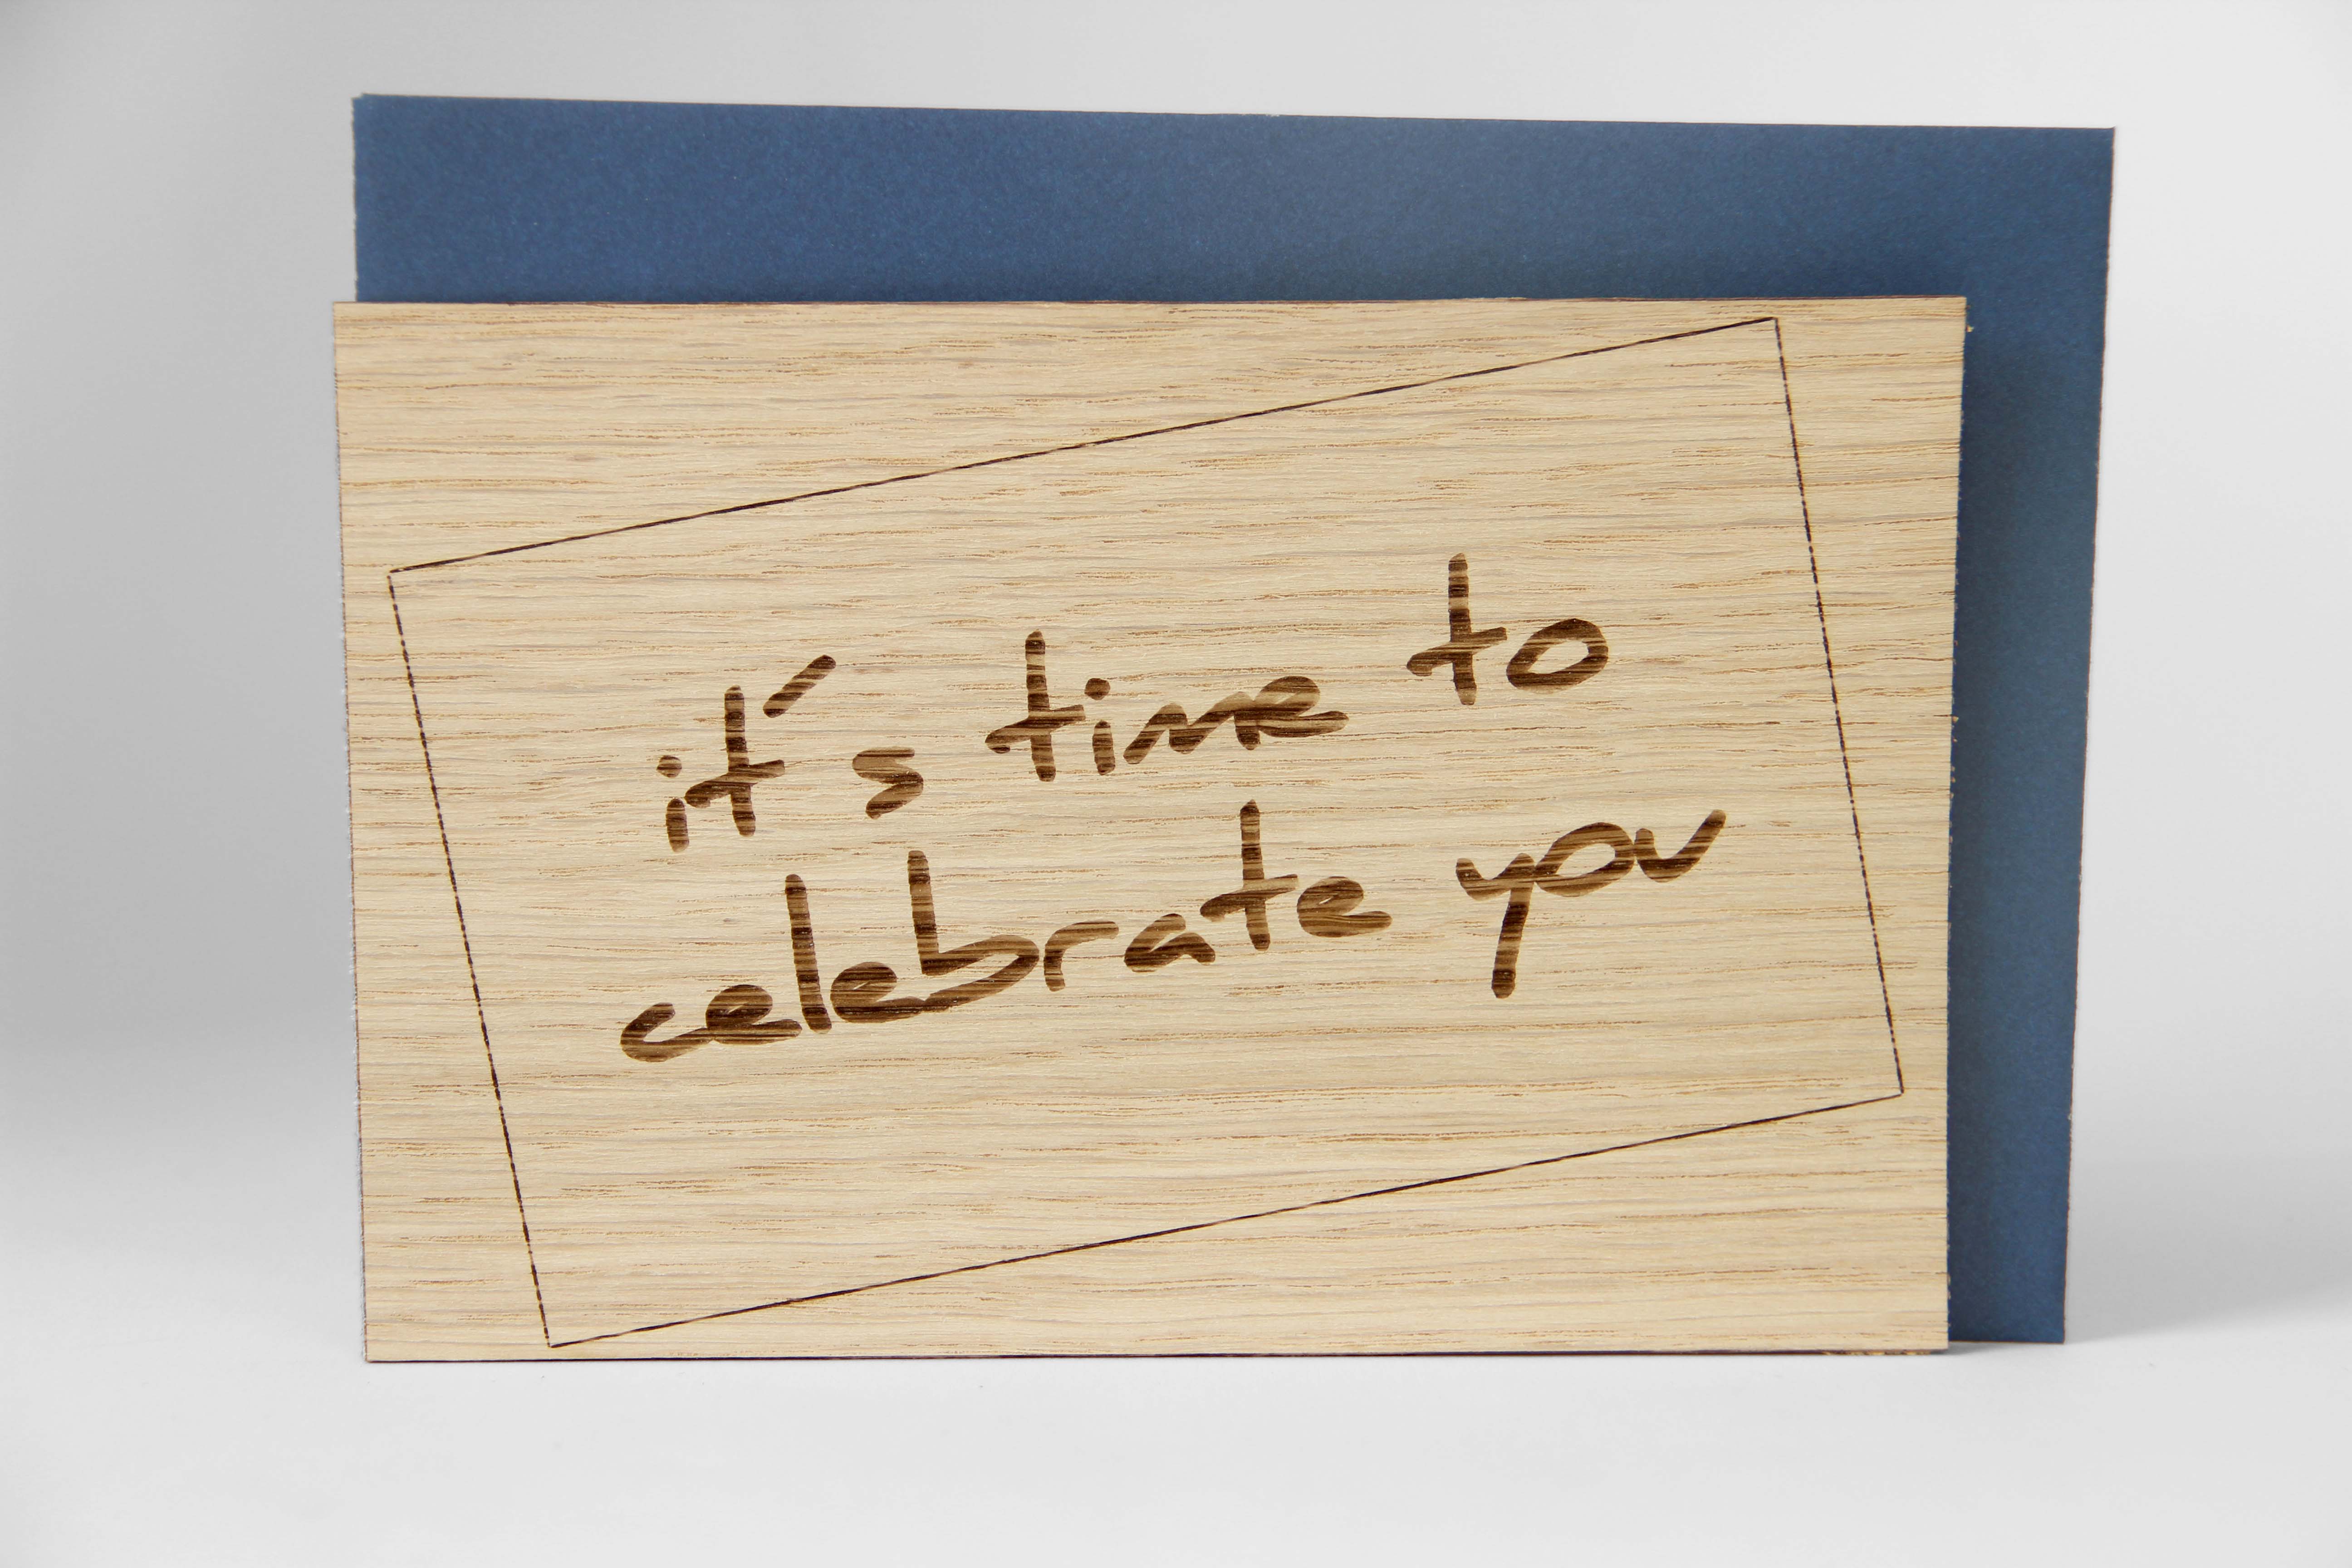 Holzgrusskarten - Geschenkkarte "It's time to celebrate you" aus Eiche, Dankeskarte